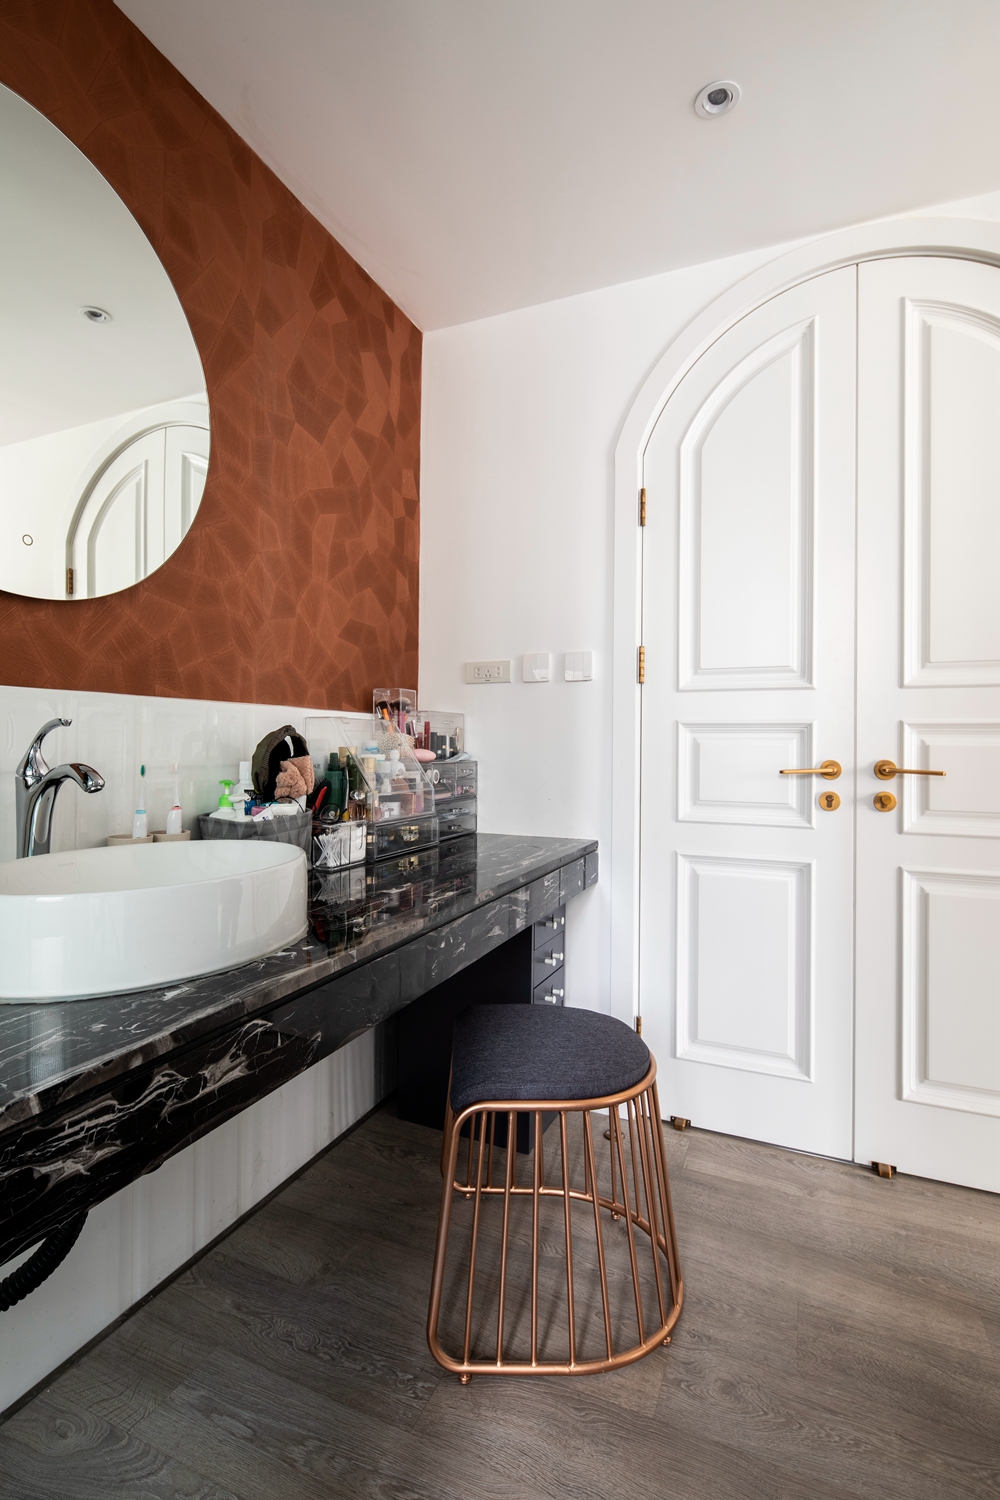 卫浴空间结构紧凑，墙面与地面采用灰色大理石铺贴，深色洗手台在其中显得精致典雅。